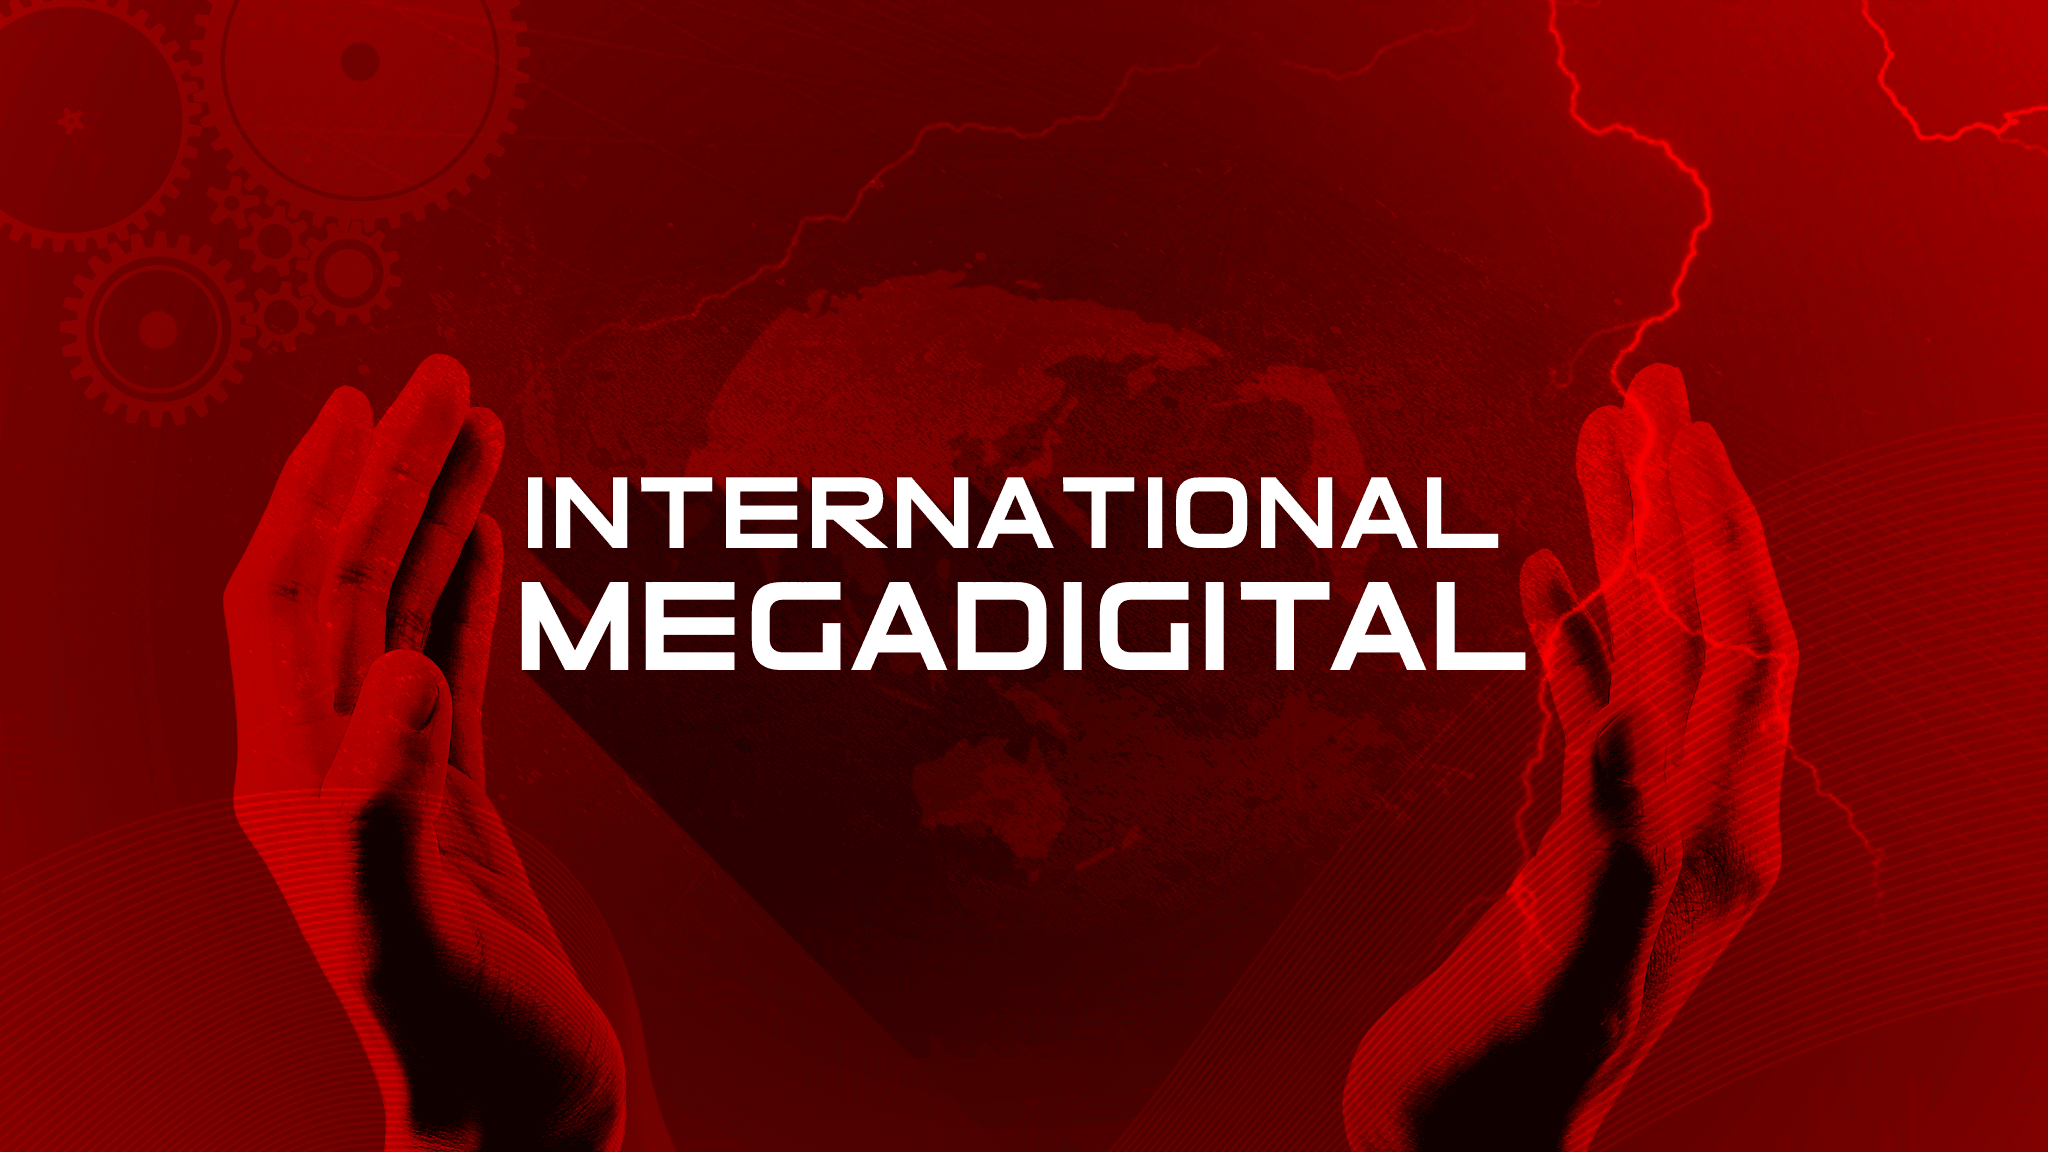 International_Megadigital 横幅